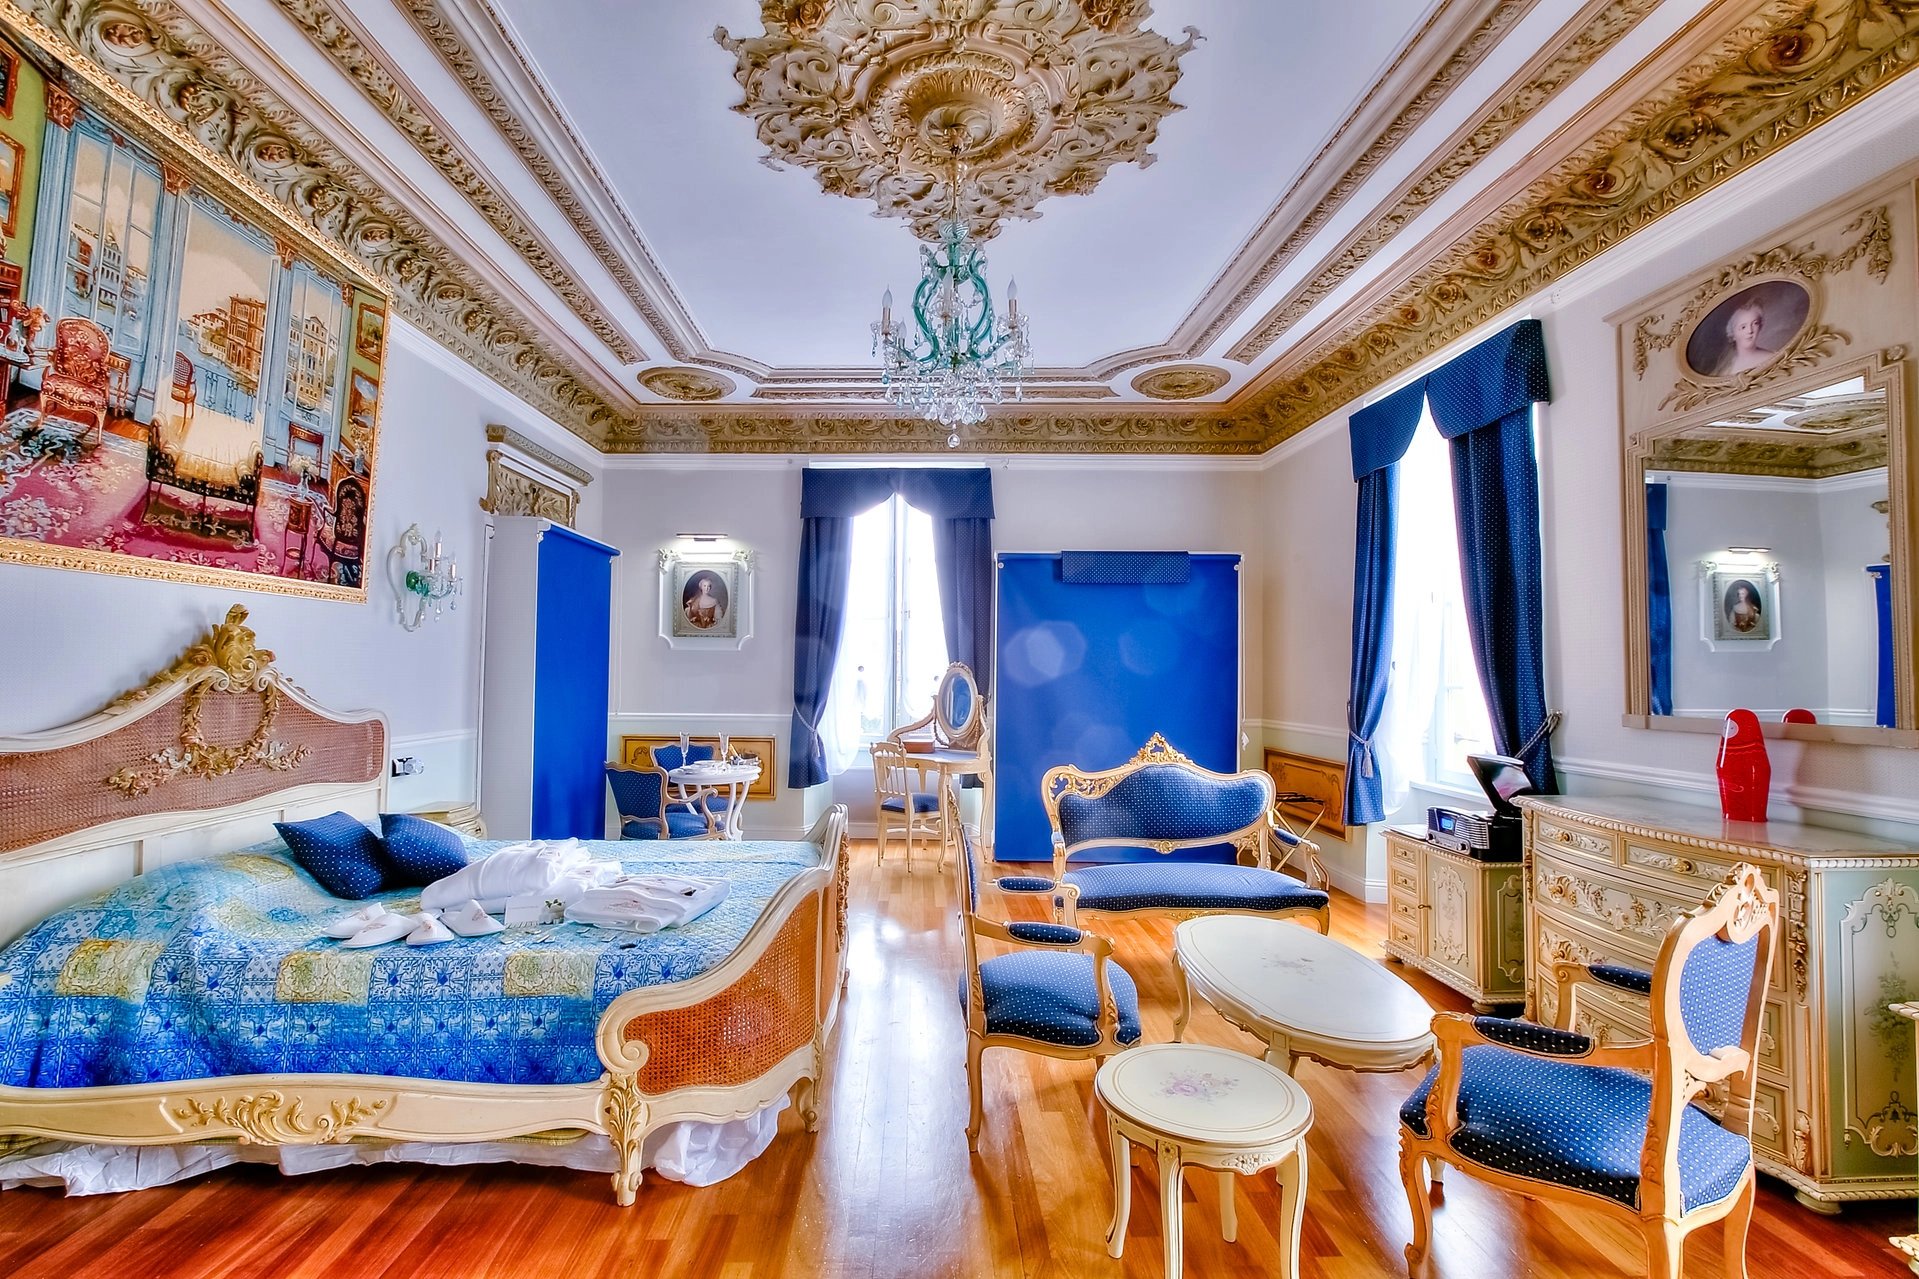 Ницца - Массена - Шикарные апартаменты в венецианском стиле